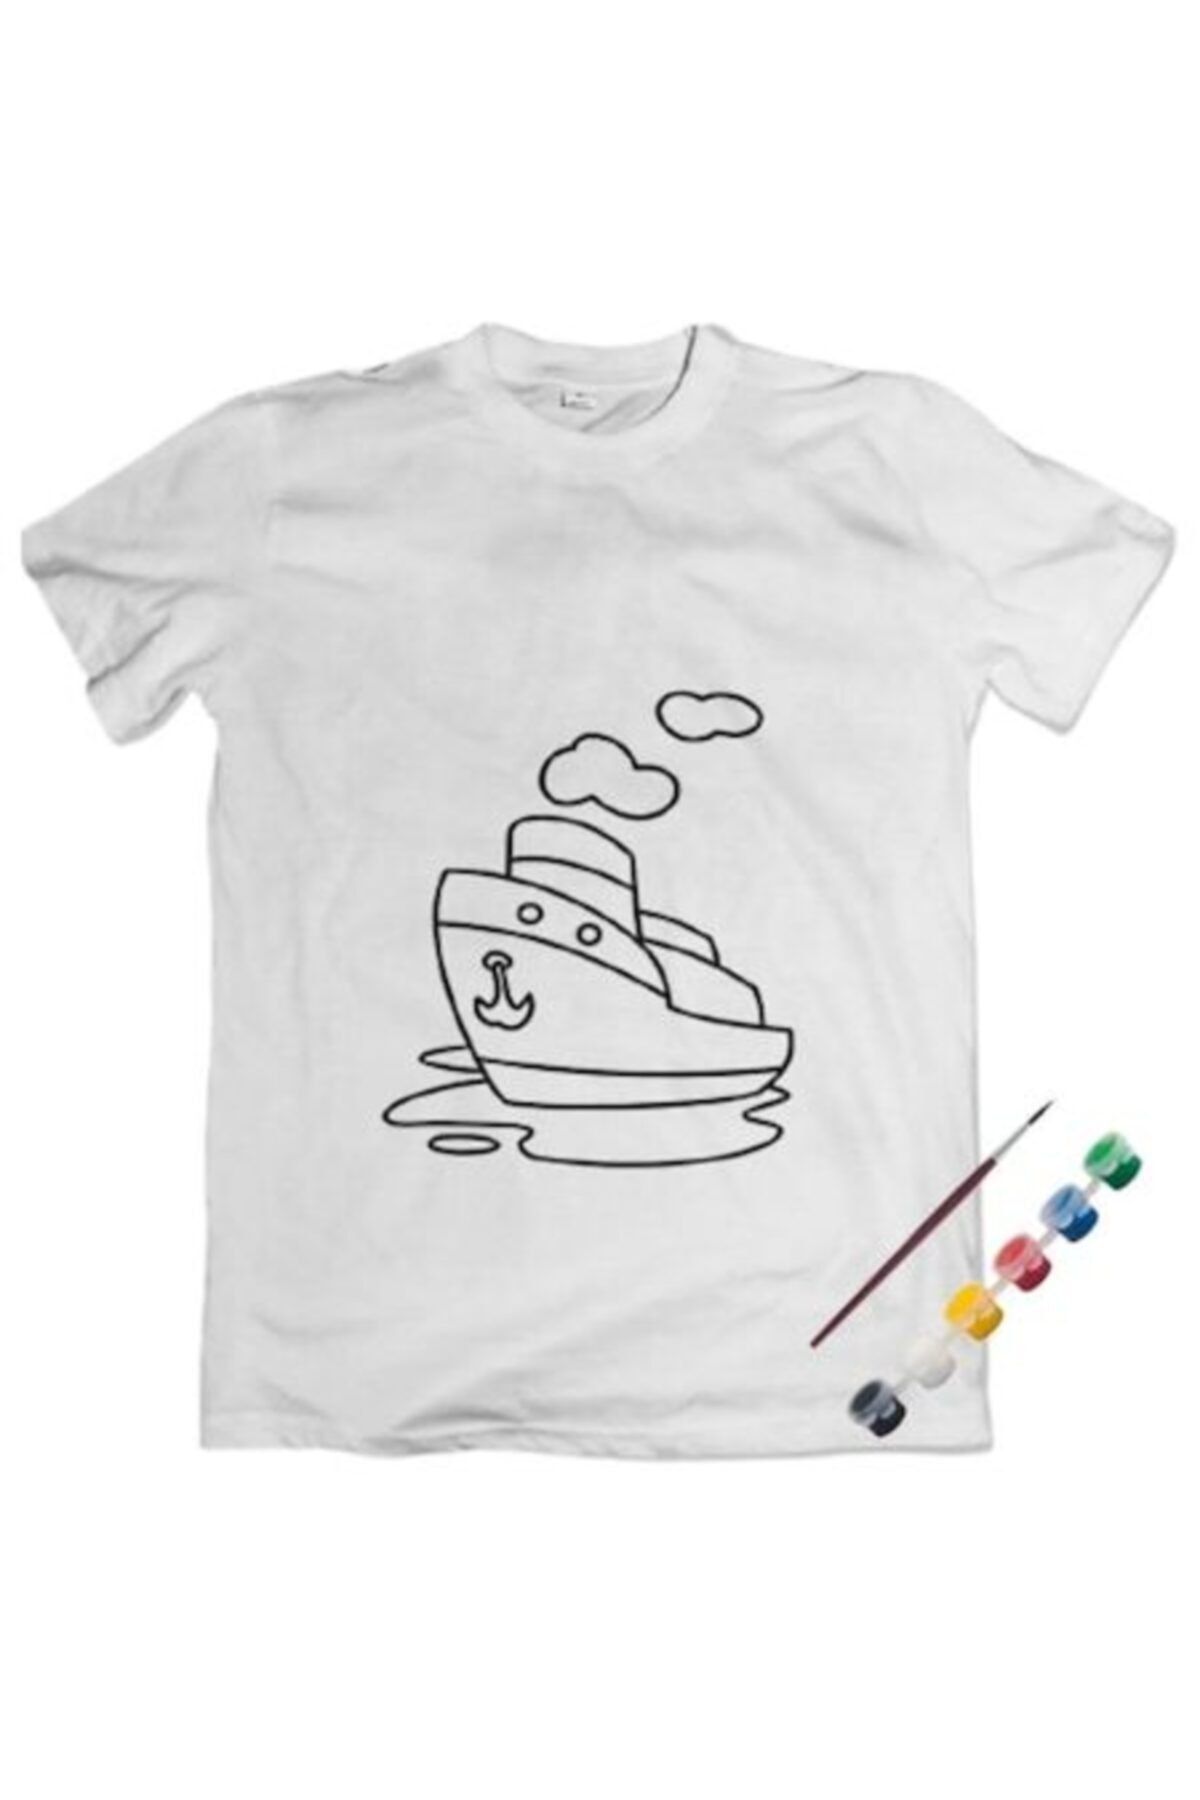 Joy and Toys Gemi Desenli T-shirt Boyama Seti 6-7 Yaş Çocuk Eğitici Aktivite